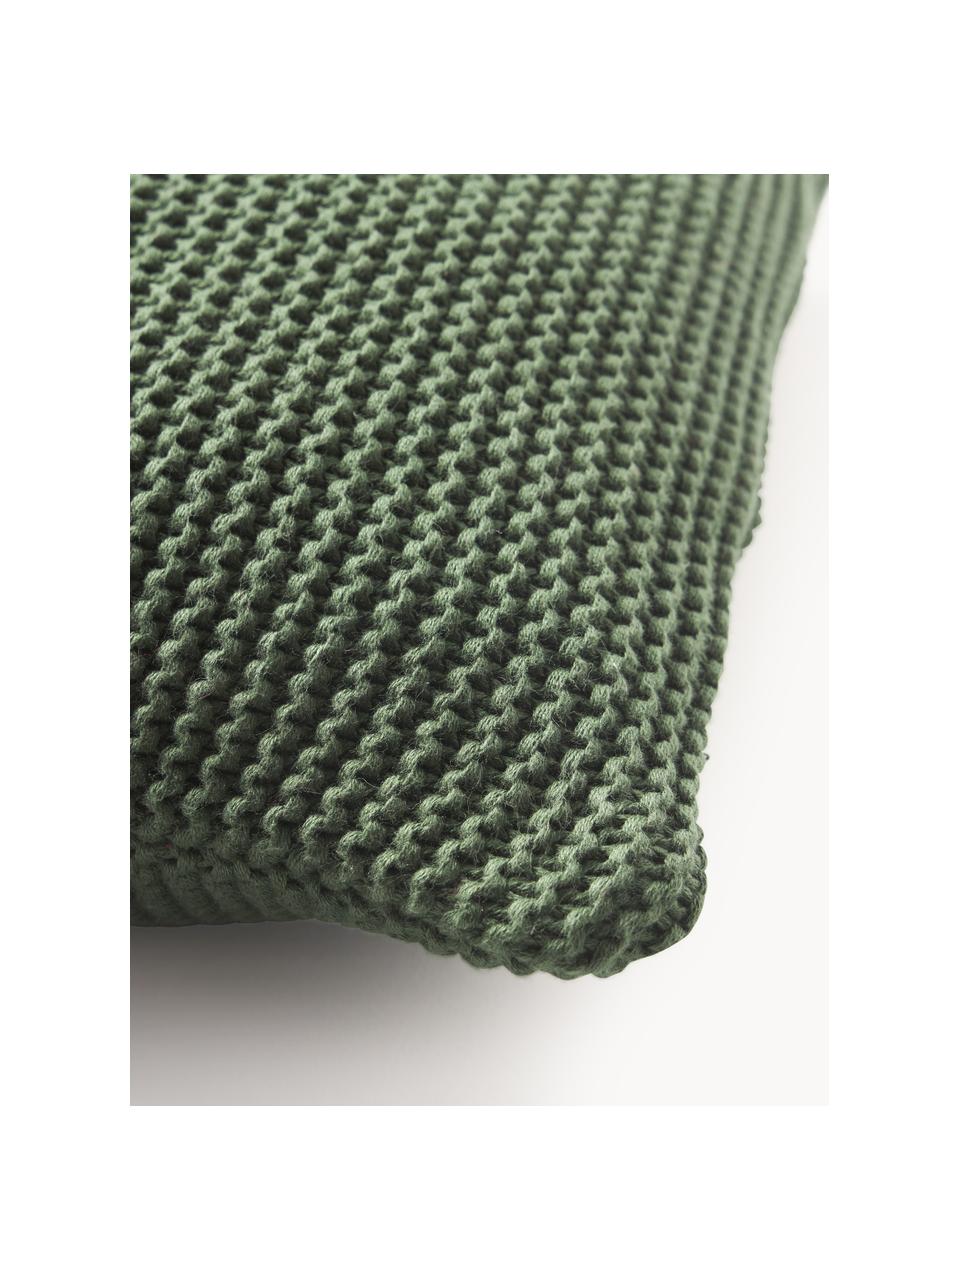 Copricuscino a maglia in cotone organico Adalyn, 100% cotone organico, certificato GOTS, Verde scuro, Larg. 40 x Lung. 40 cm